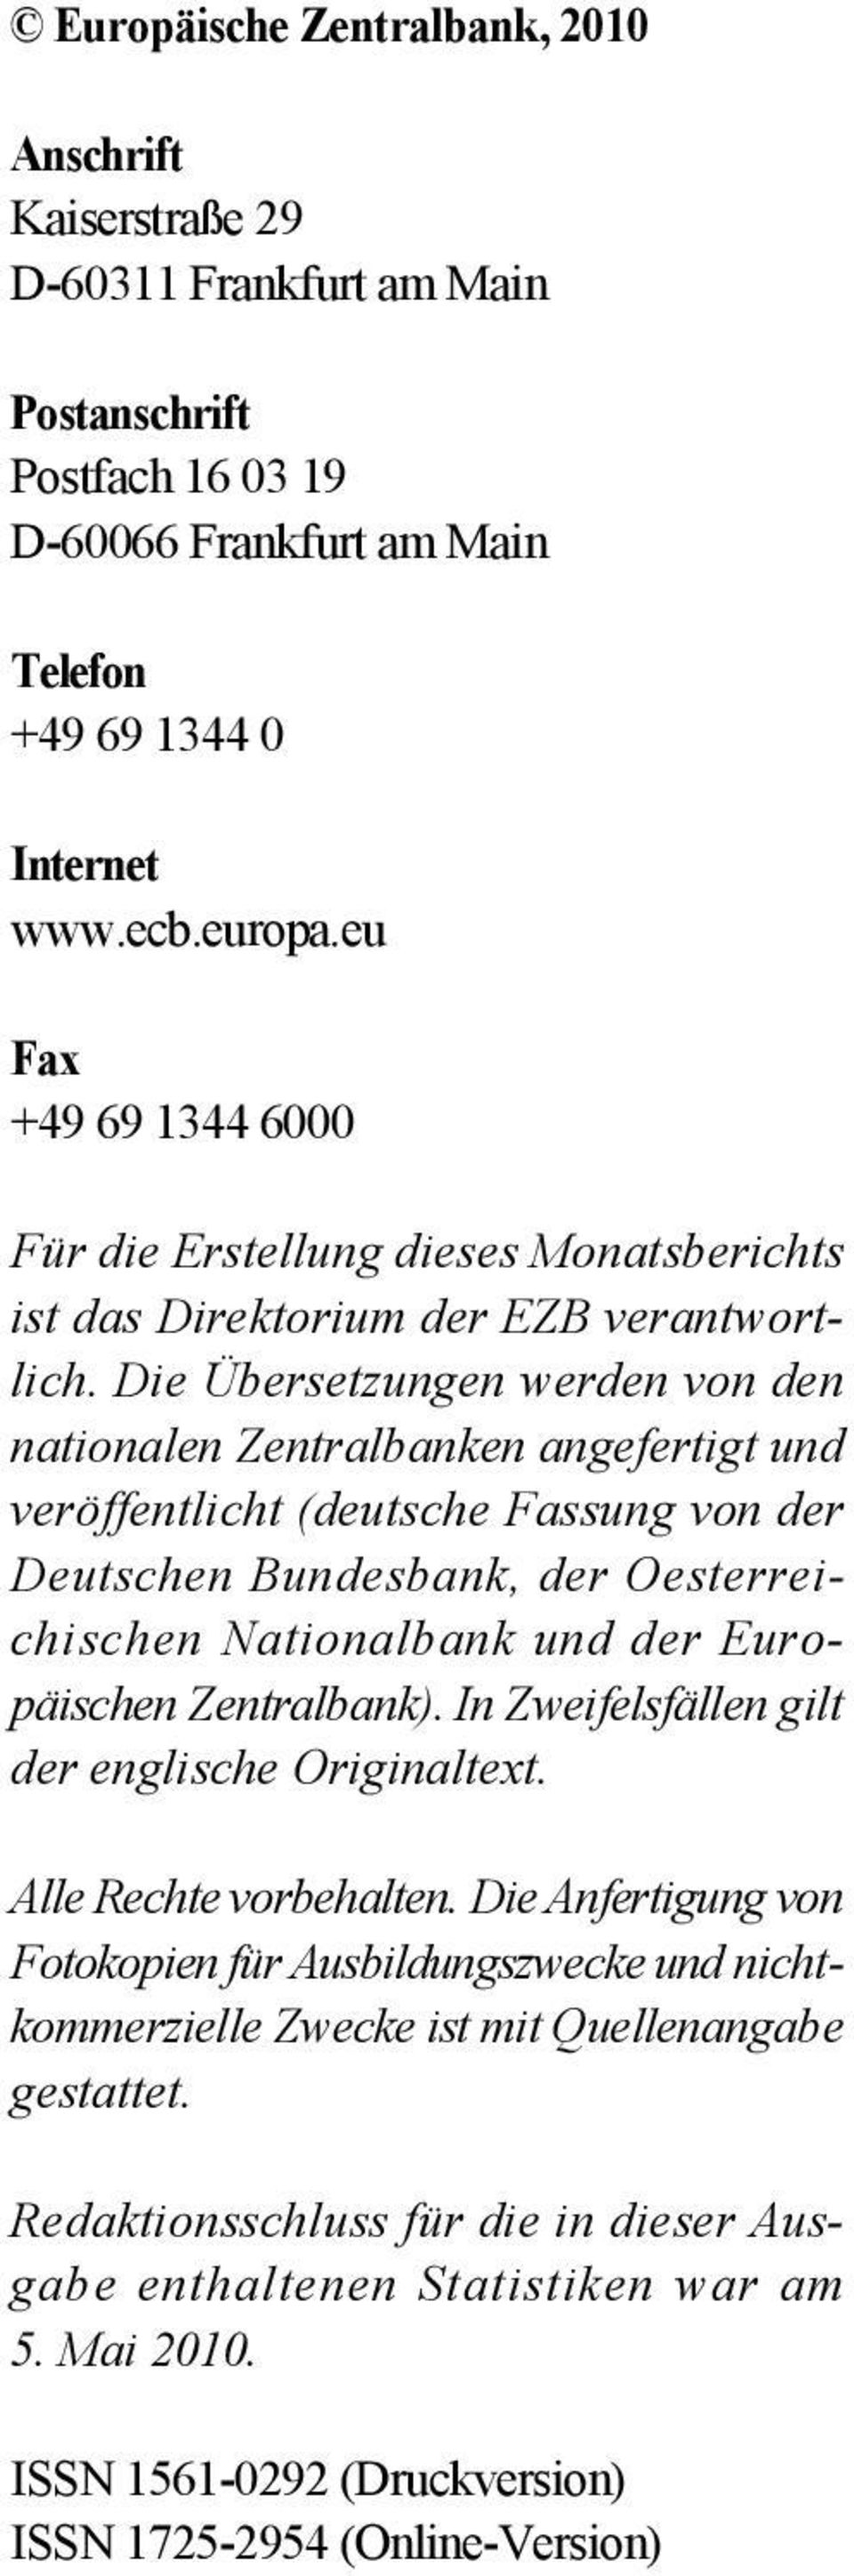 Die Übersetzungen werden von den nationalen Zentralbanken angefertigt und veröffentlicht (deutsche Fassung von der Deutschen Bundesbank, der Oesterreichischen Nationalbank und der Europäischen